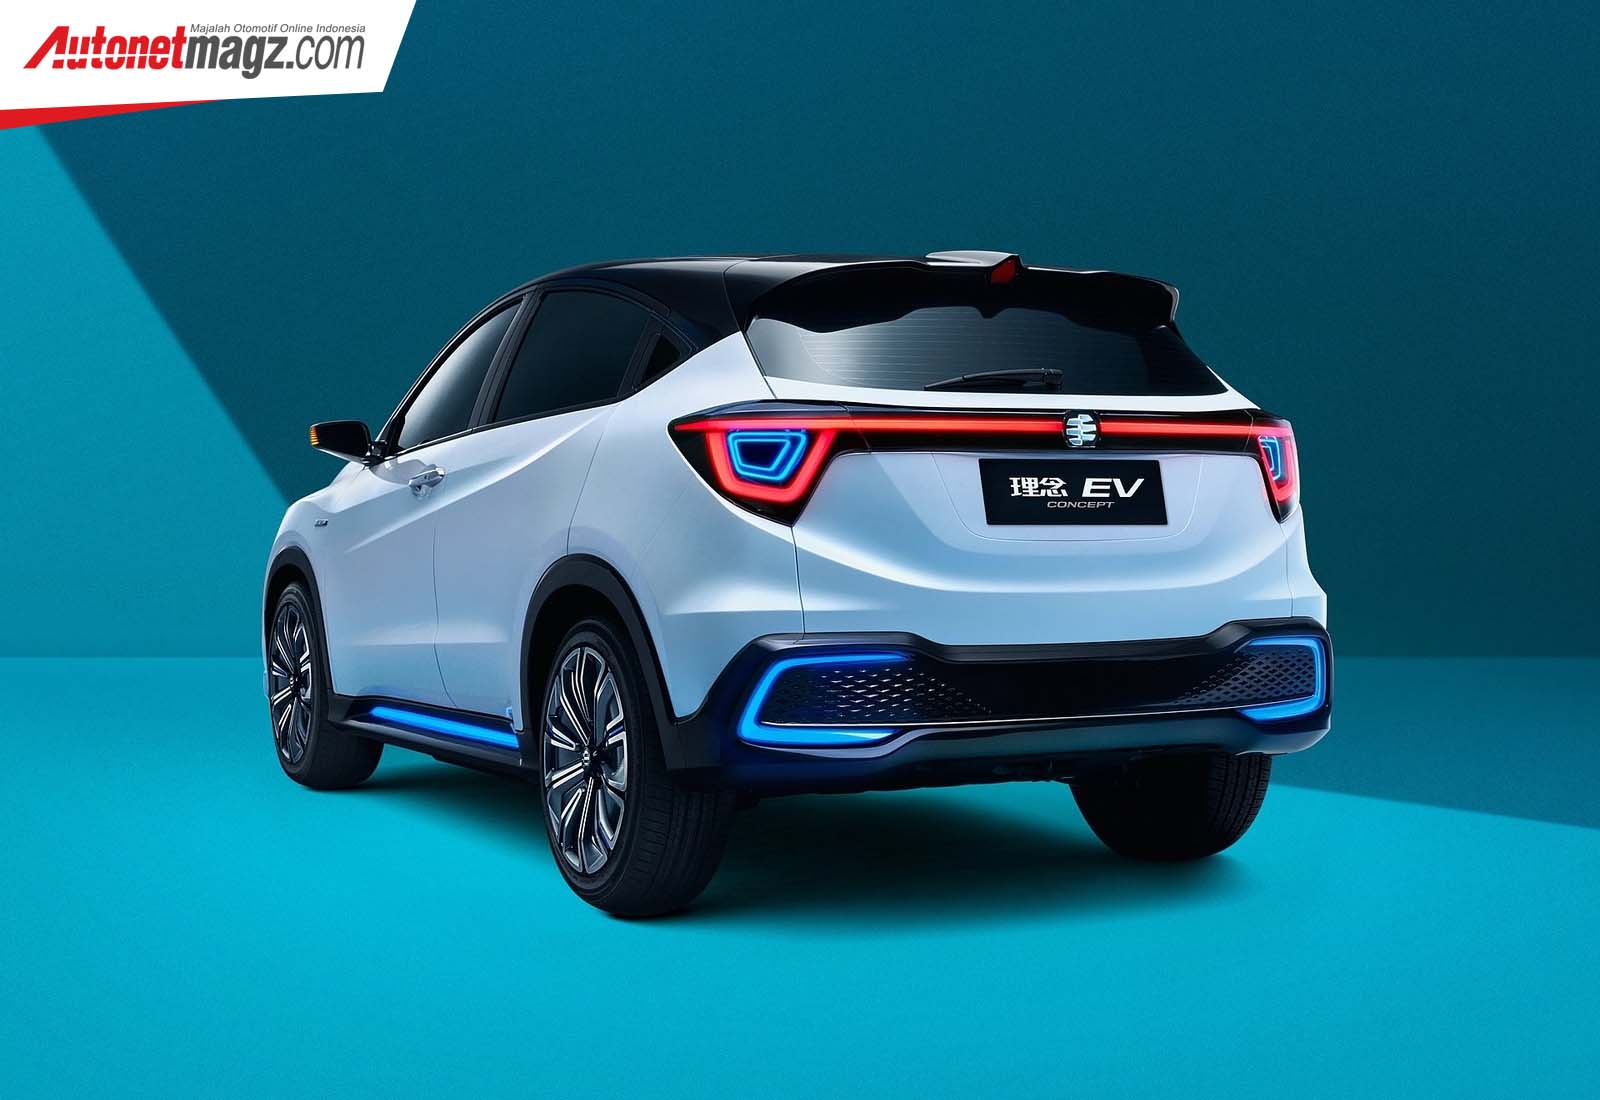 Berita, Honda Everus Concept belakang: Next-Gen Honda HR-V Akan Naik Kelas Menjadi Coupe-SUV!